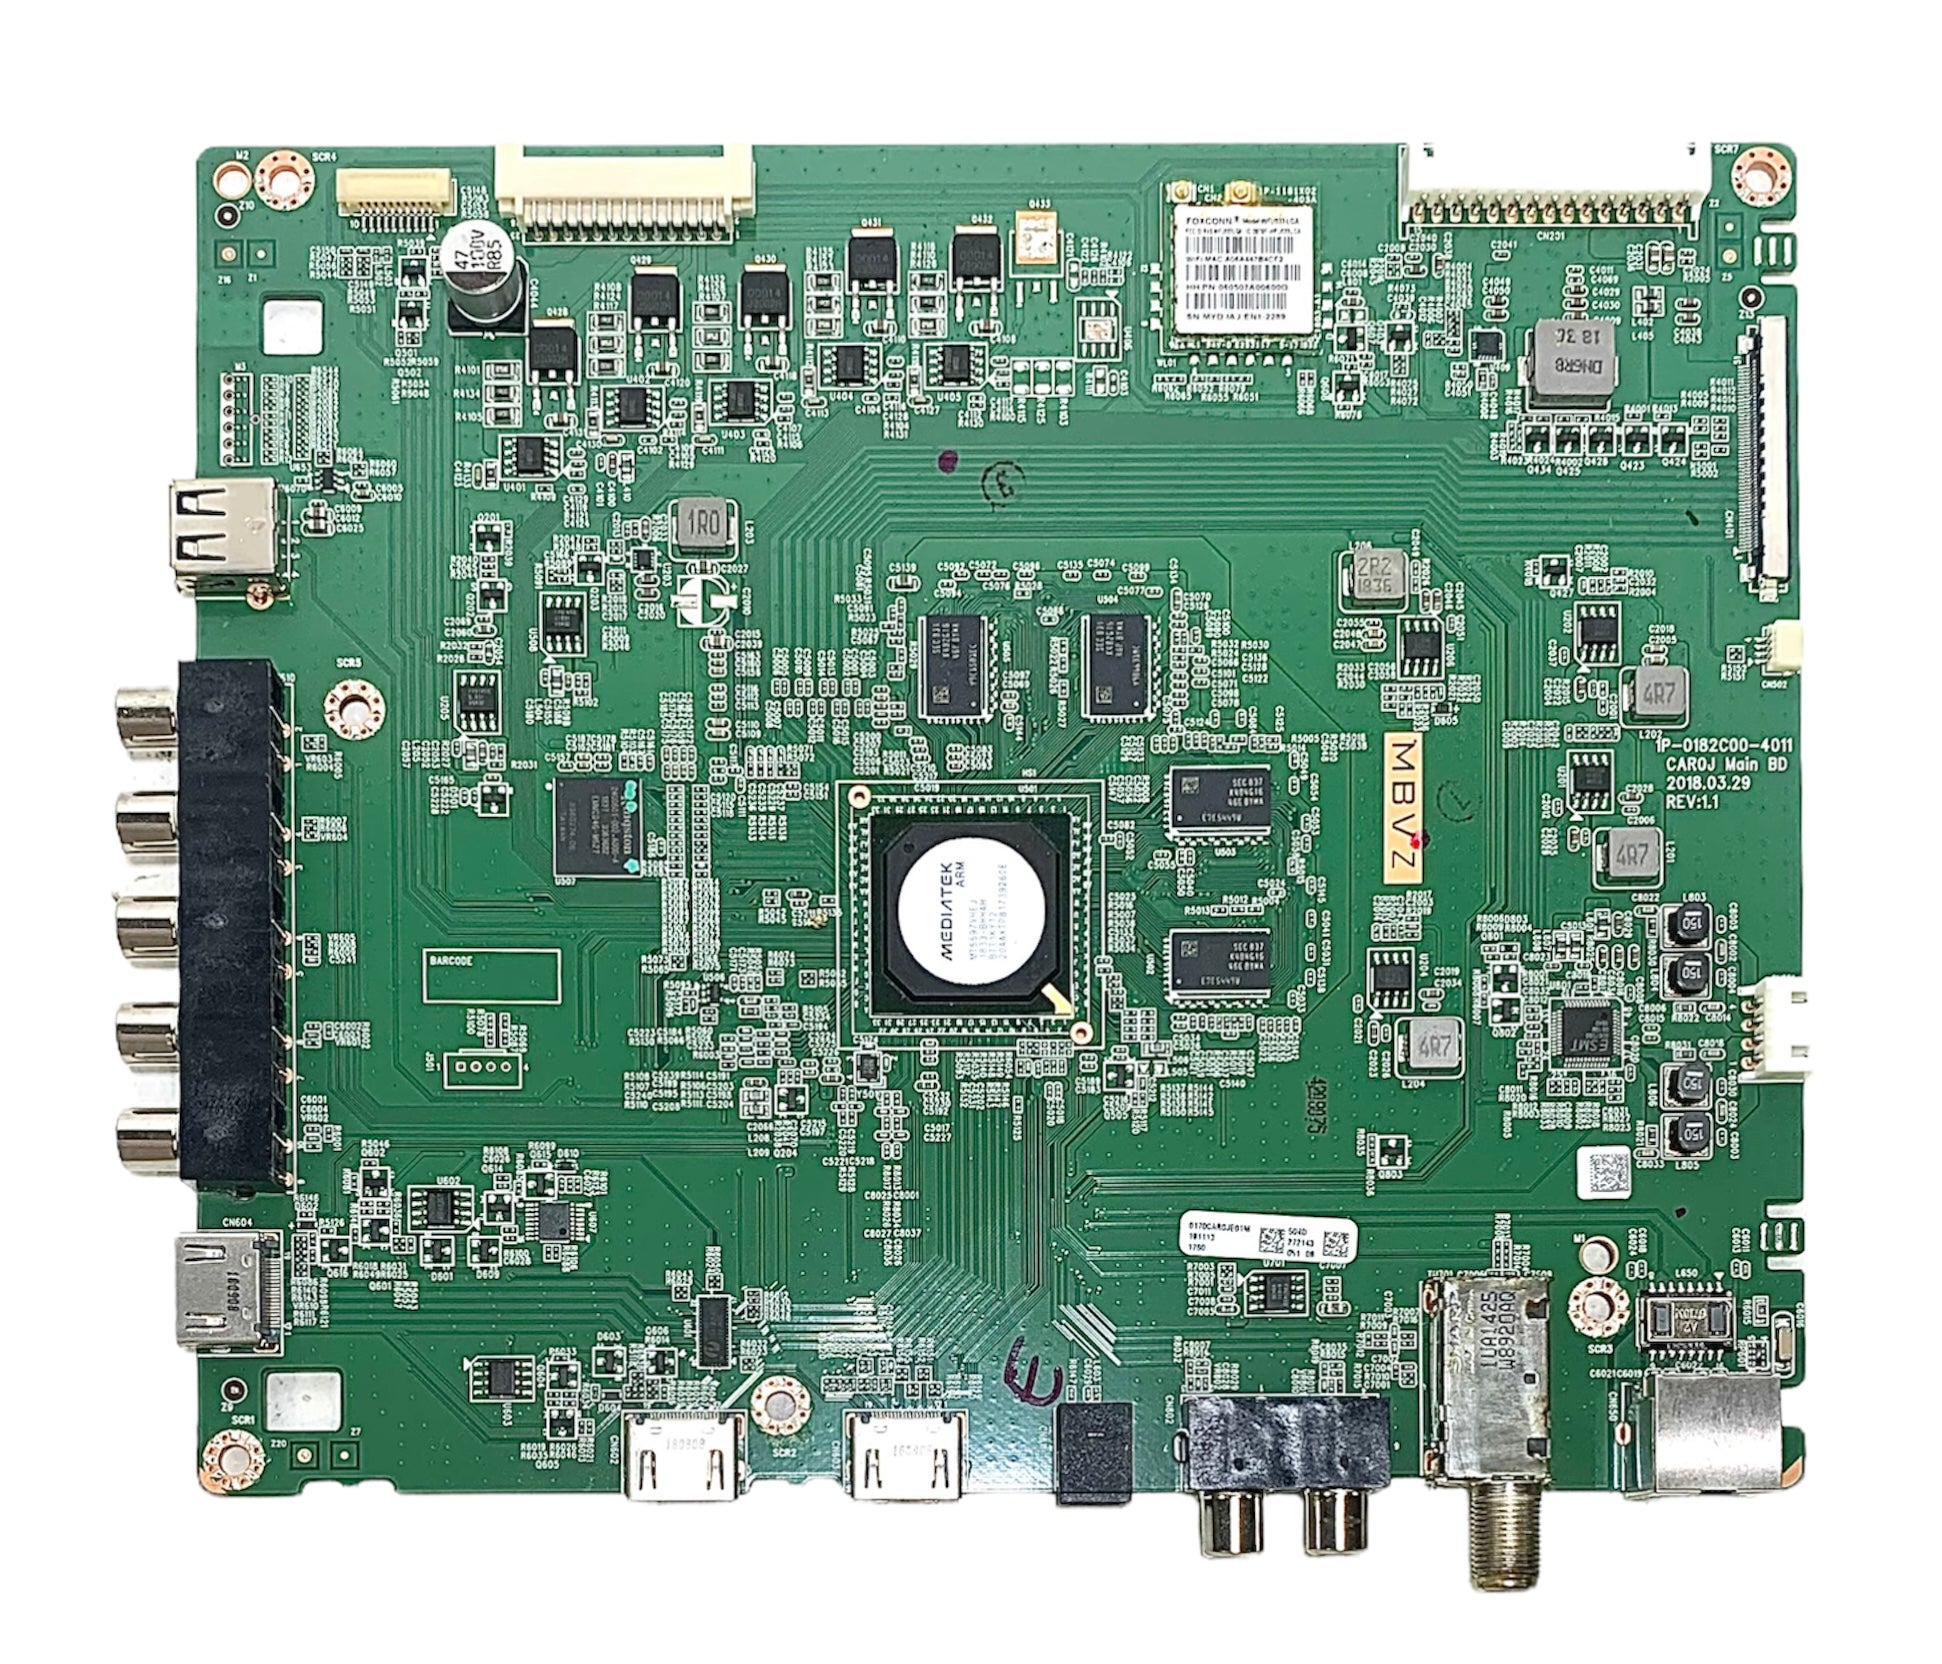 Vizio Y8388504S Main Board for D60-F3 (LFTRXBLU or LFTRXBLV Serial)